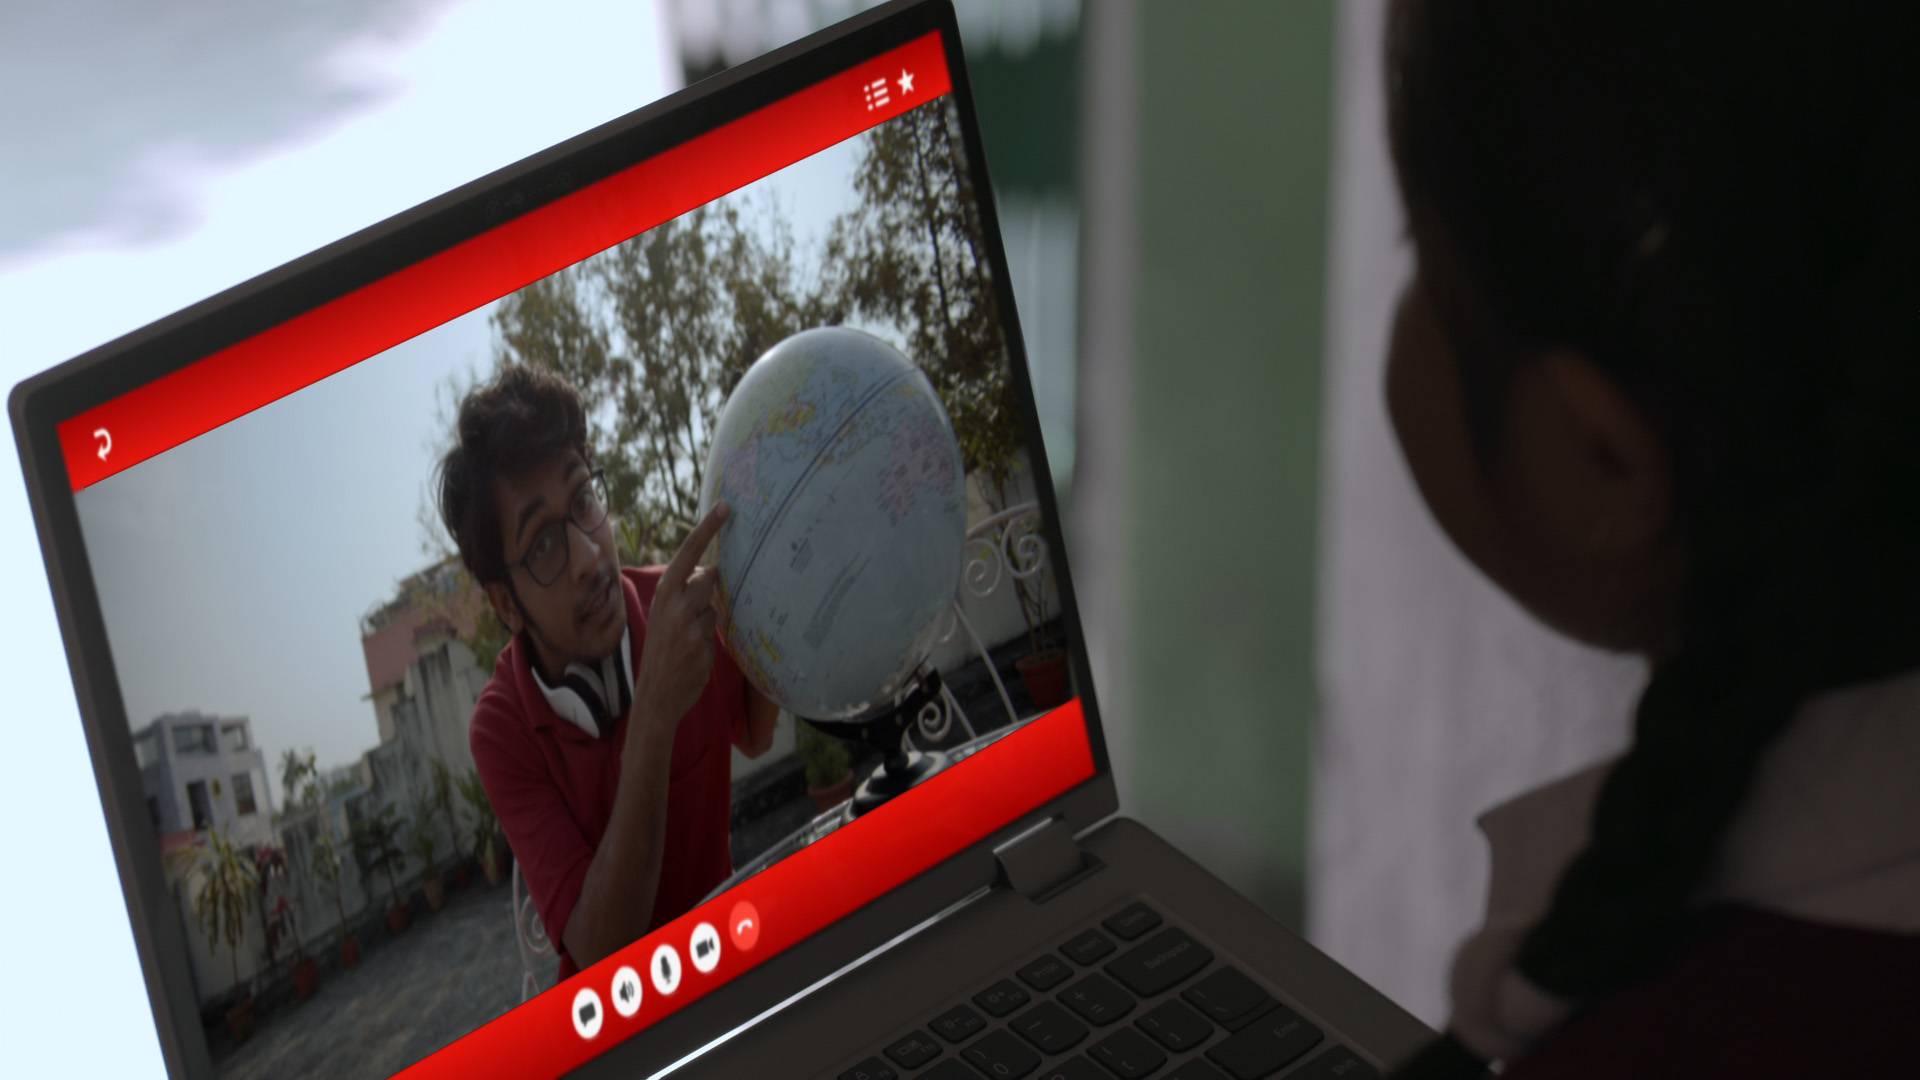 Nouvelles technologies éducatives : cours en ligne sur un portable Lenovo, le professeur bénévole montre une mappemonde